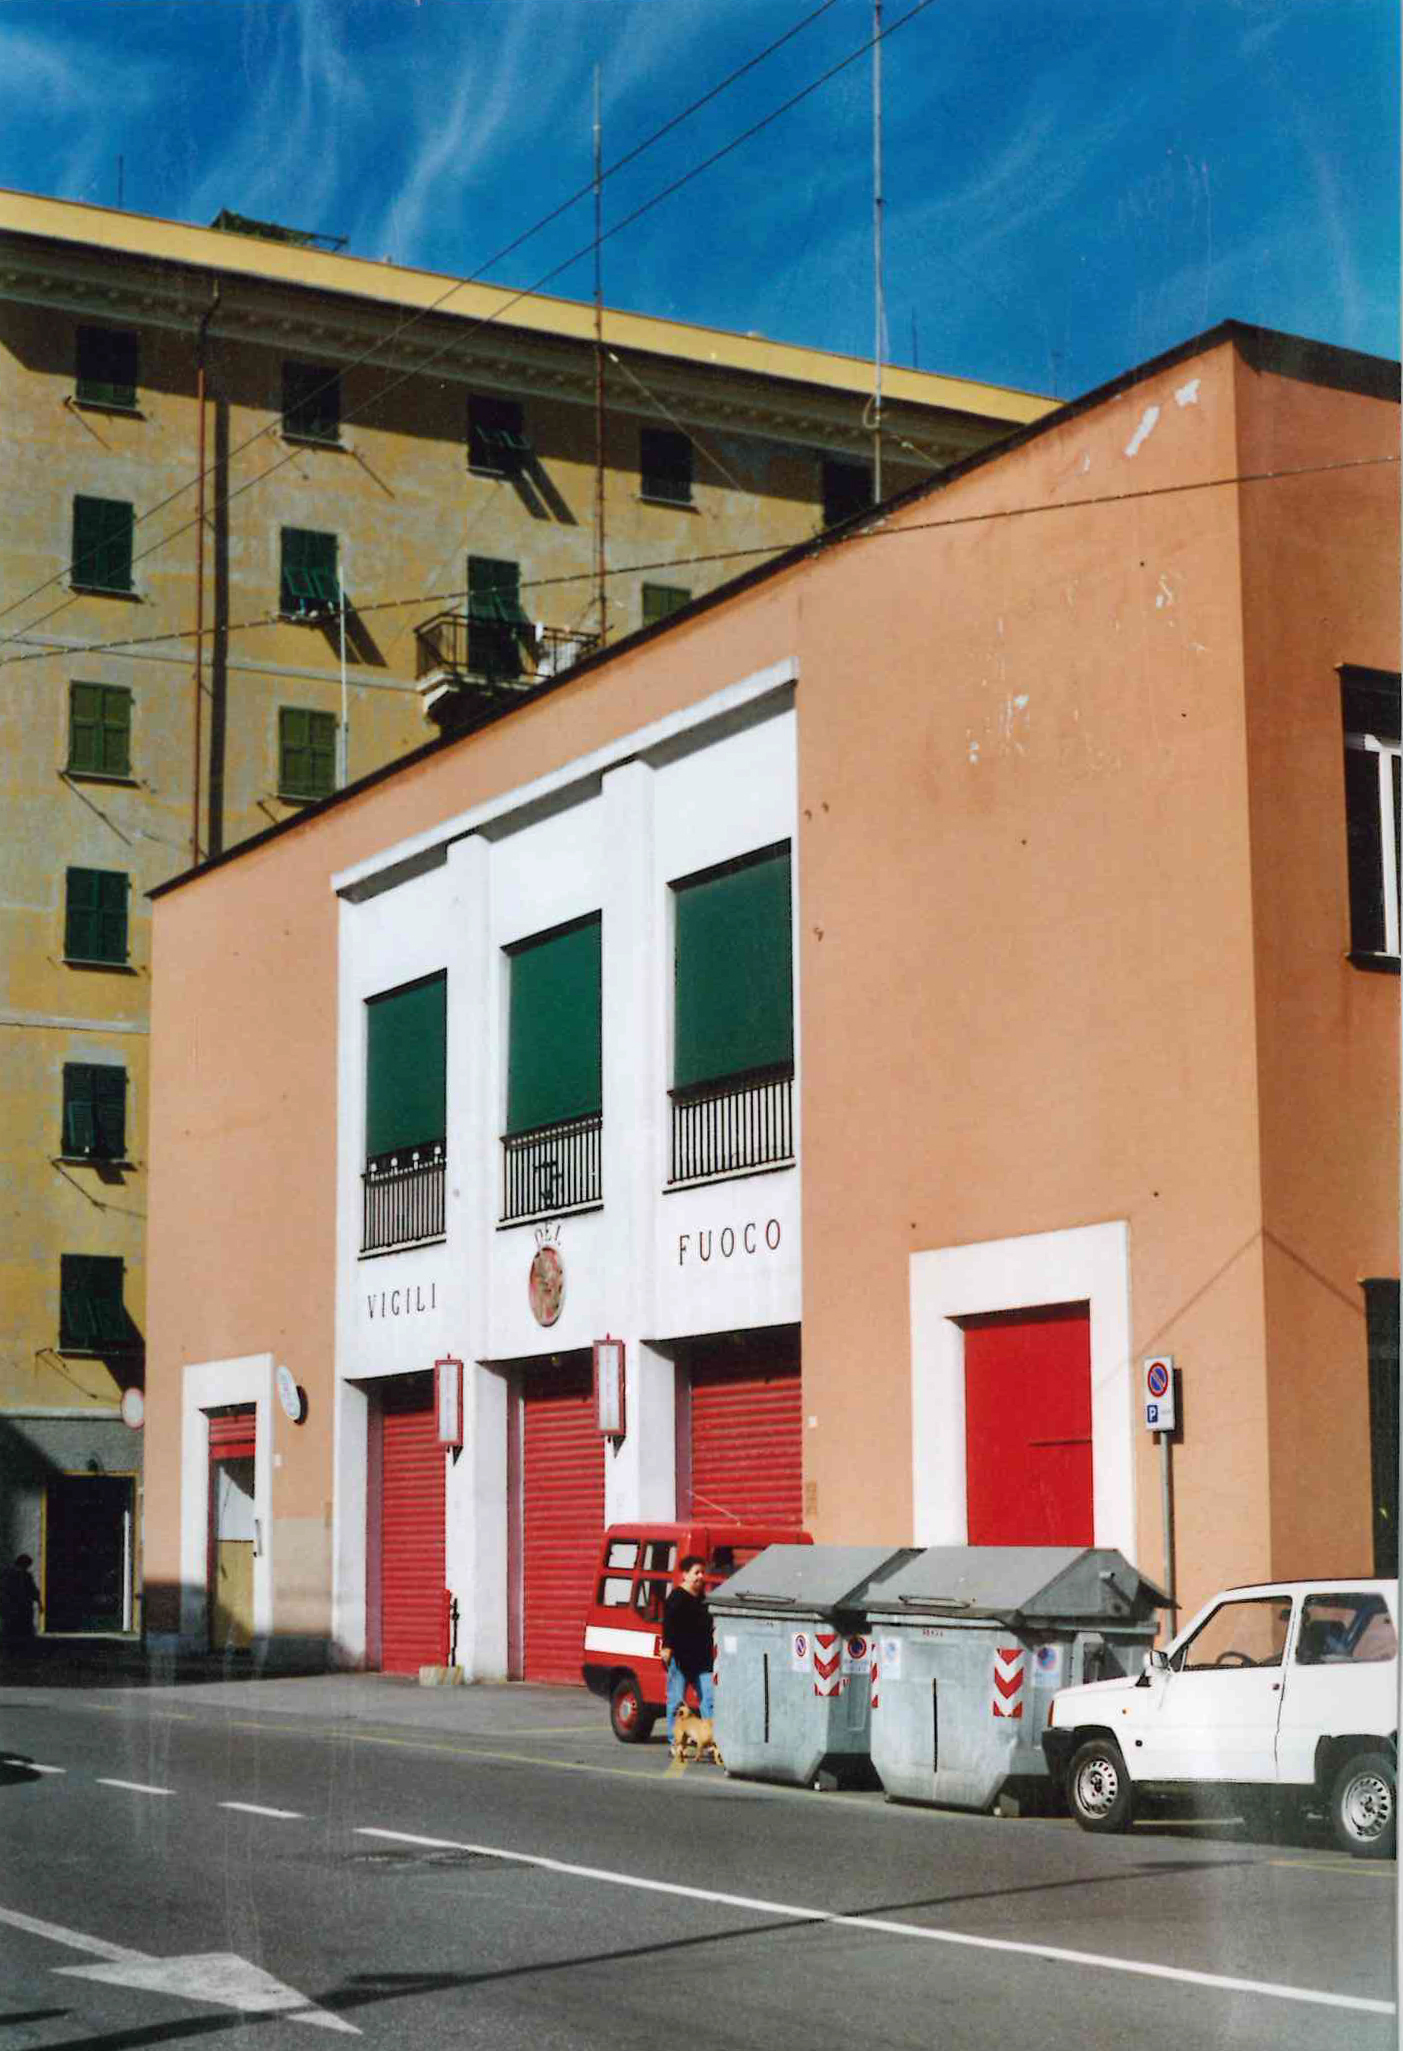 caserma dei vigili del fuoco (caserma, dei vigili del fuoco) - Genova (GE)  (XX)